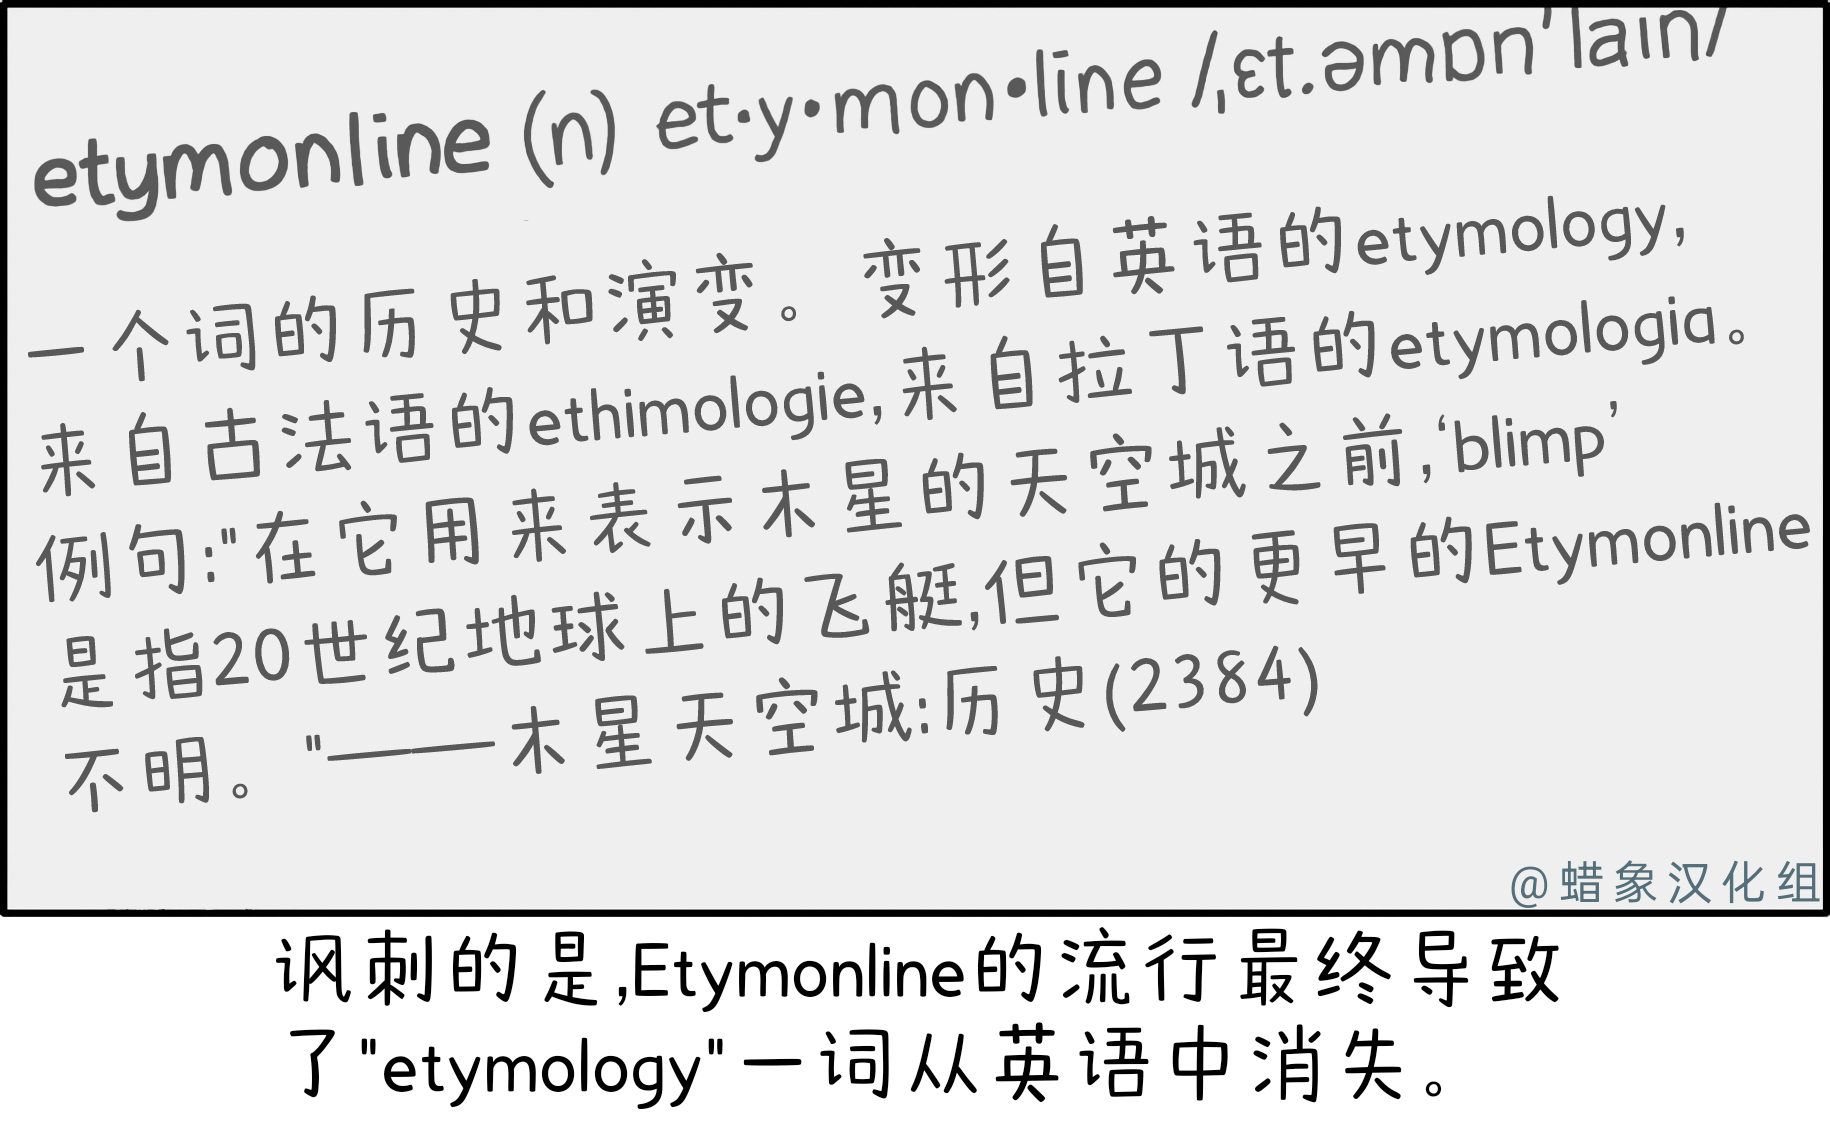 Etymonline